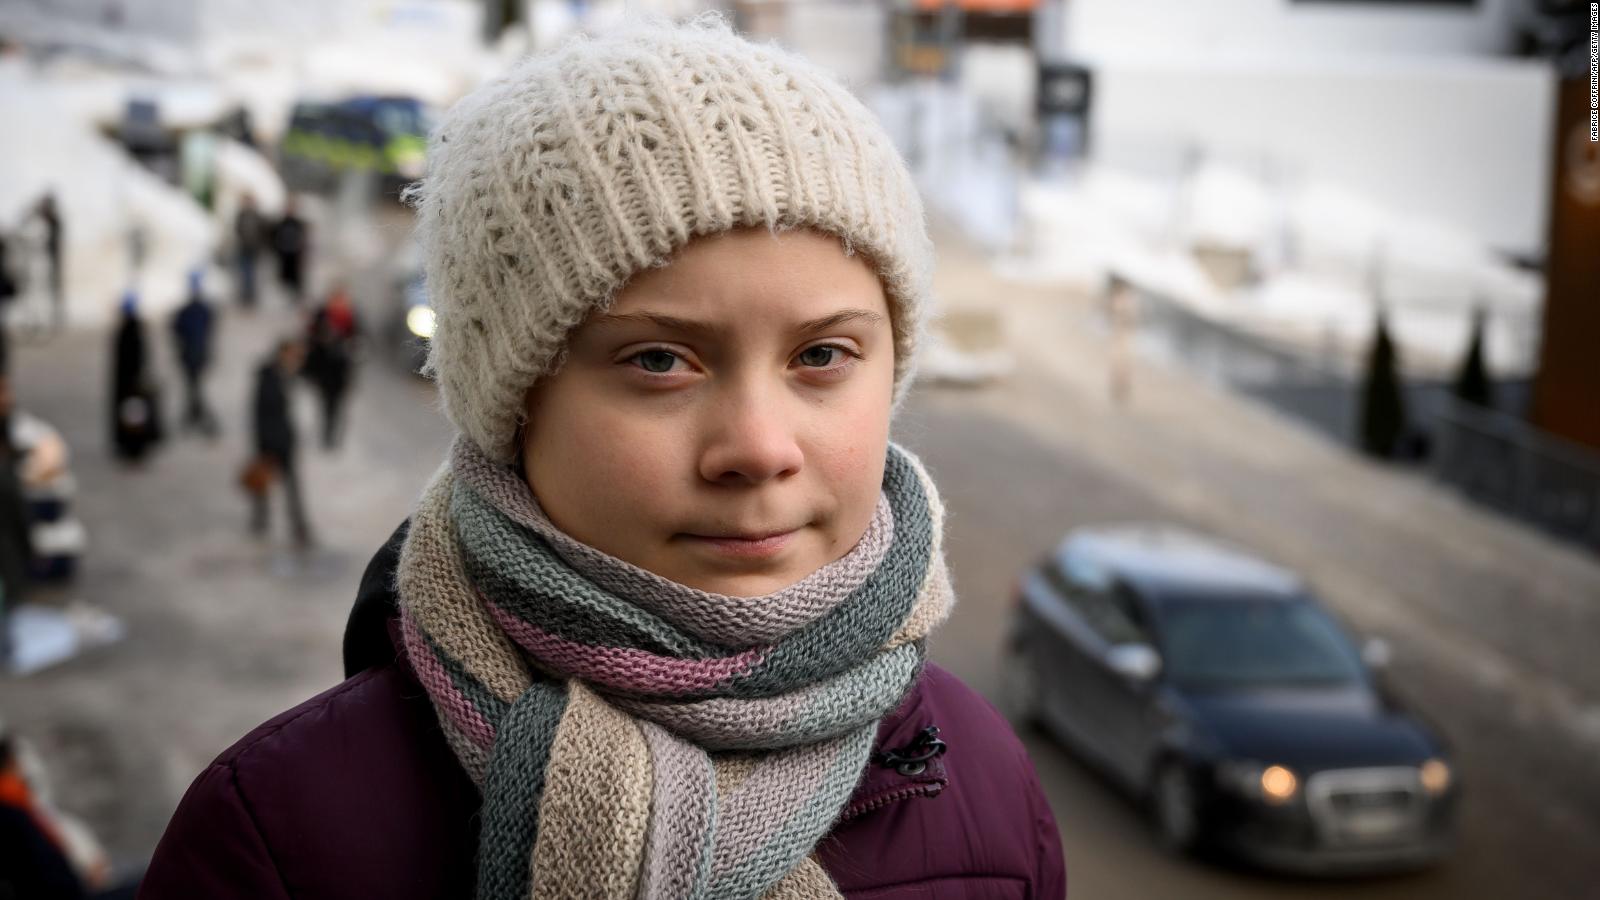 ¿Quién es Greta Thunberg, la líder ambientalista adolescente? Video CNN